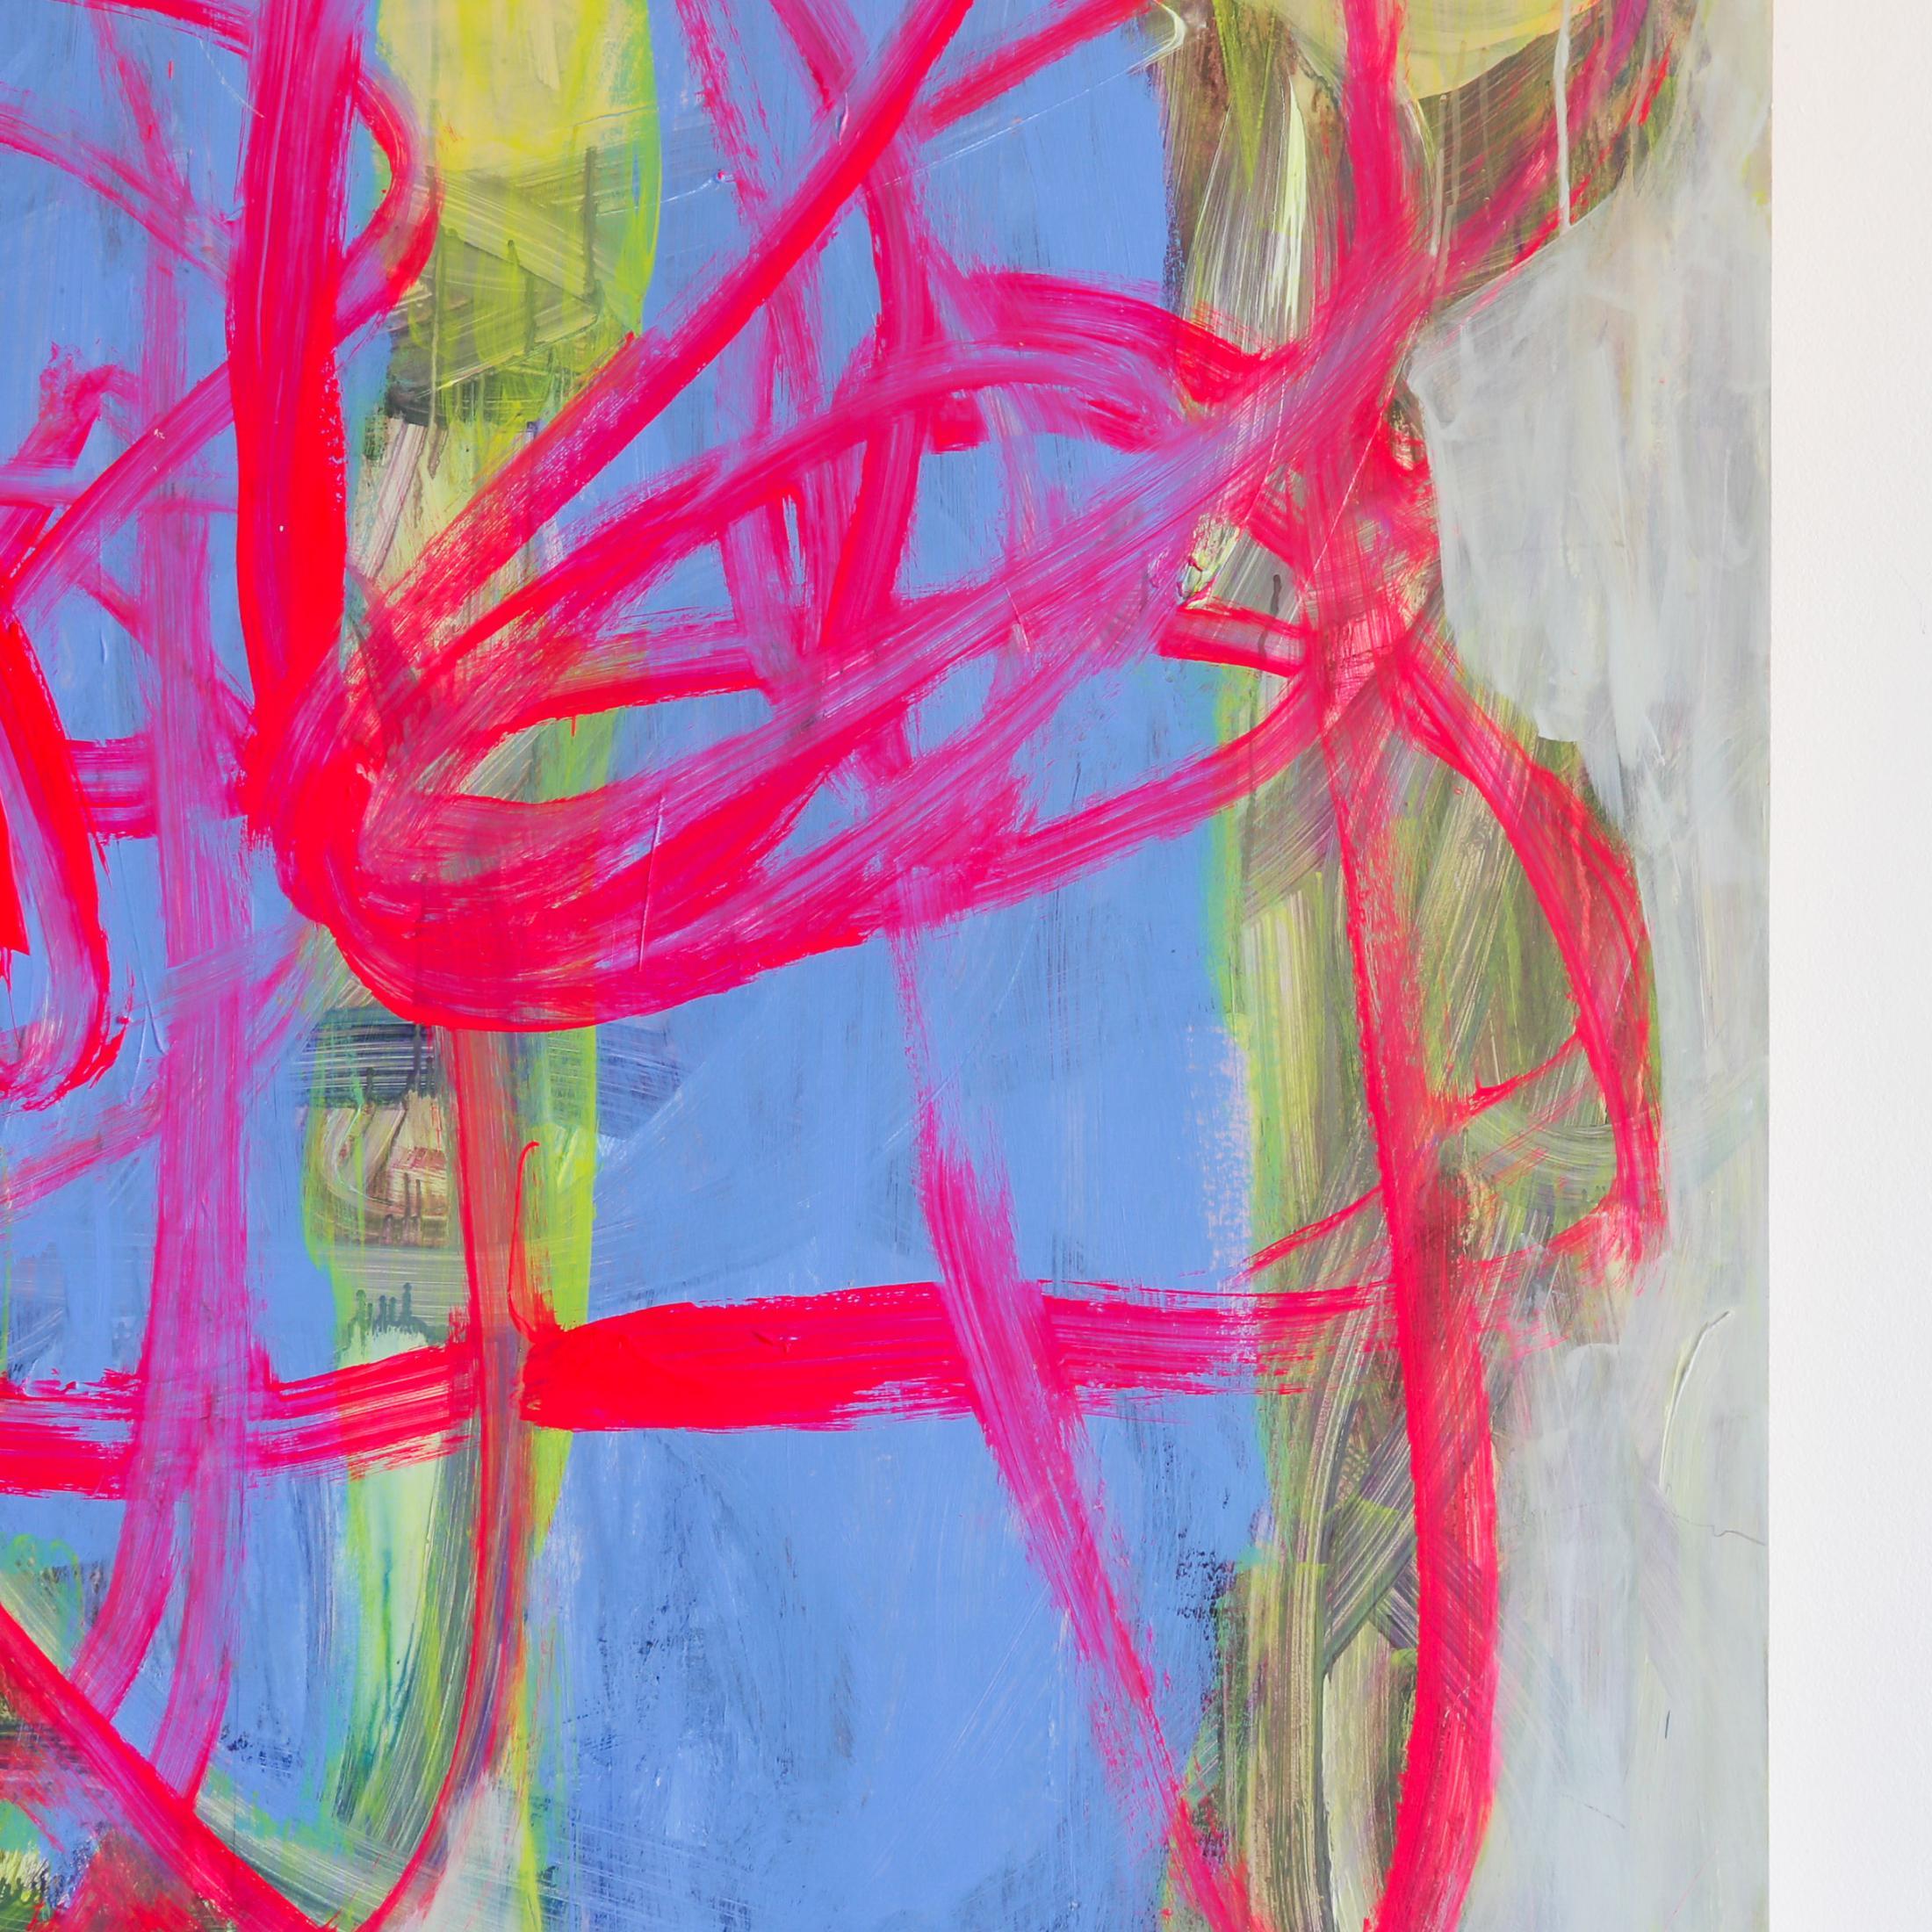 Yum Three der Künstlerin Brenda Zappitell ist ein rosa, blaues und graues, zeitgenössisches, abstraktes Bild aus Flash und Acryl mit Kaltwachs auf einer 60 x 60 großen Platte und kostet 16.000 $.

Brenda Zappitell schafft abstrakt-expressionistische